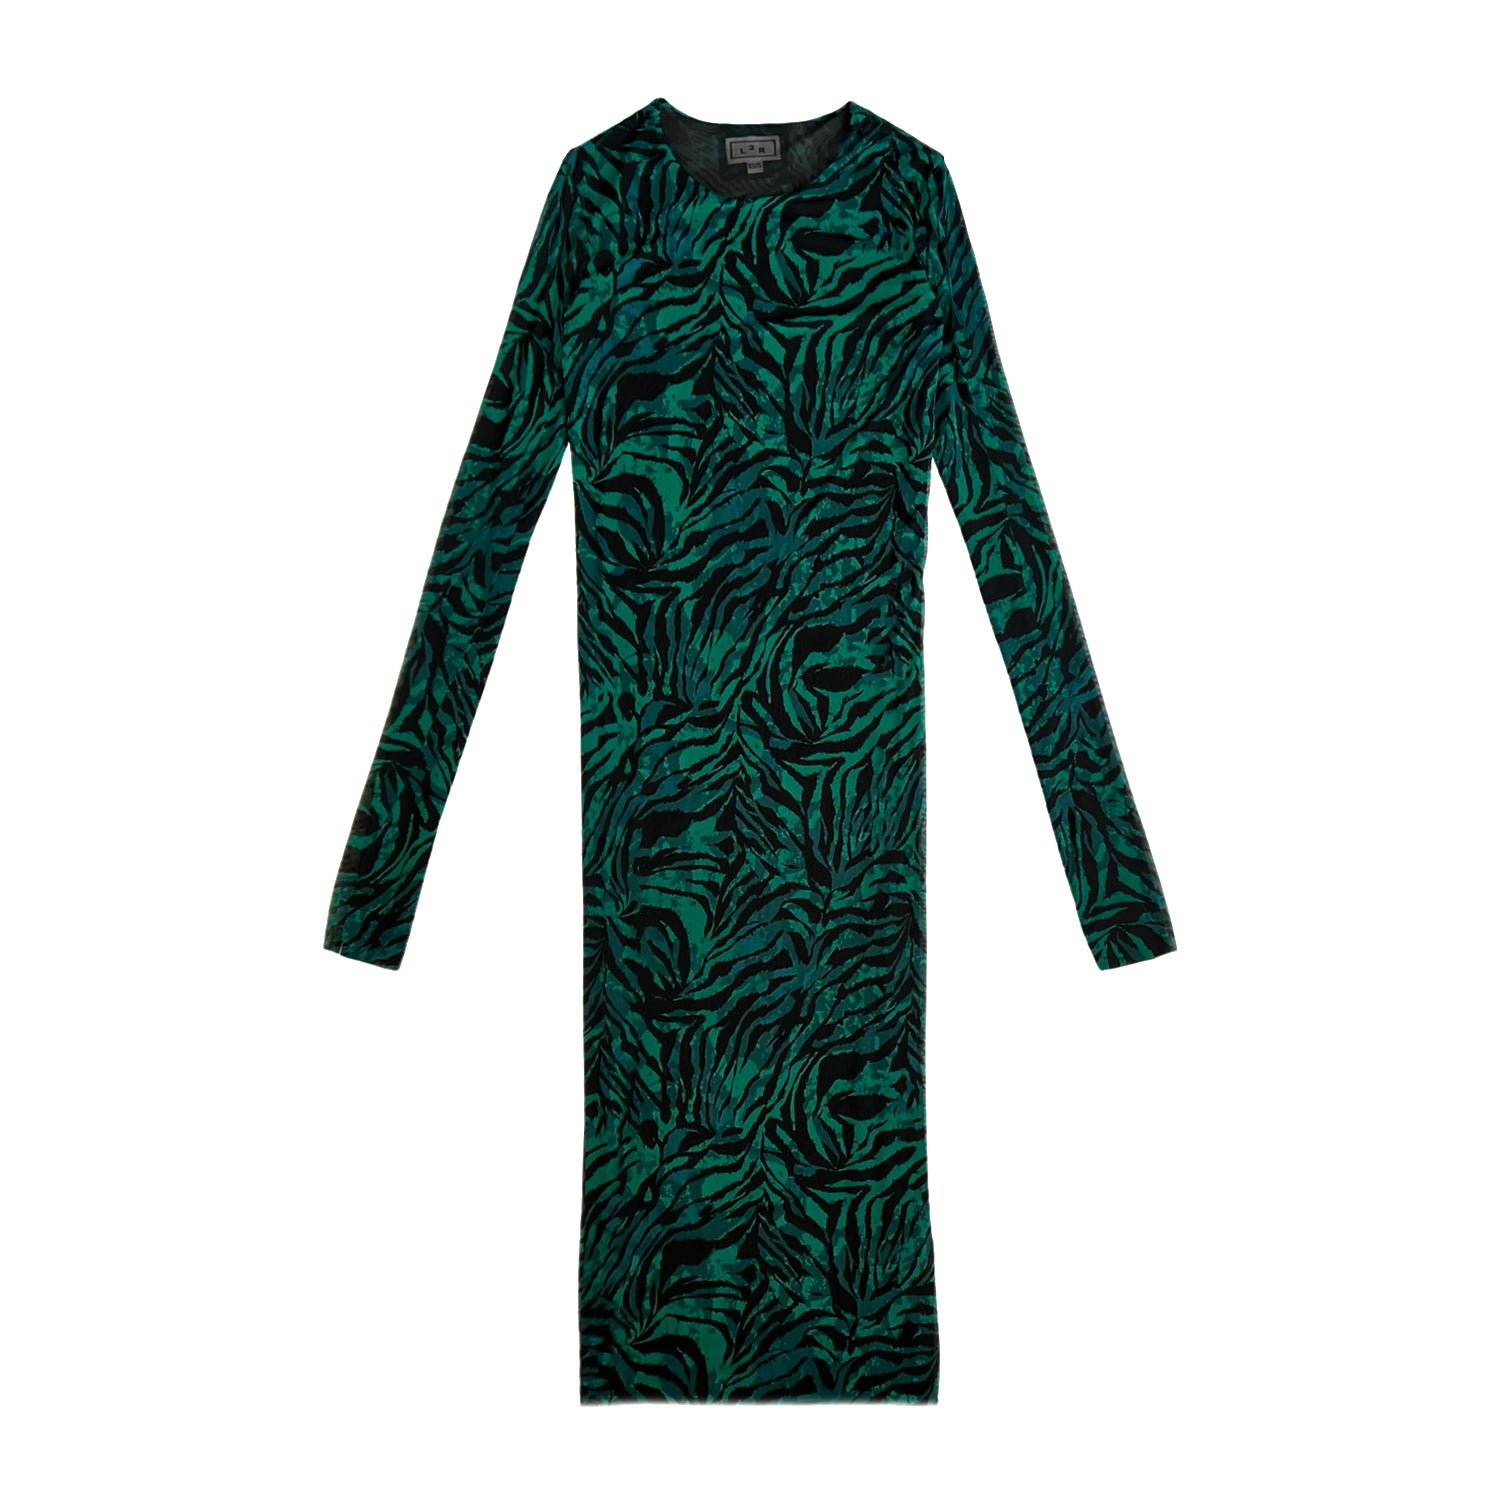 Reversible Print Mesh Dress in Green & Black